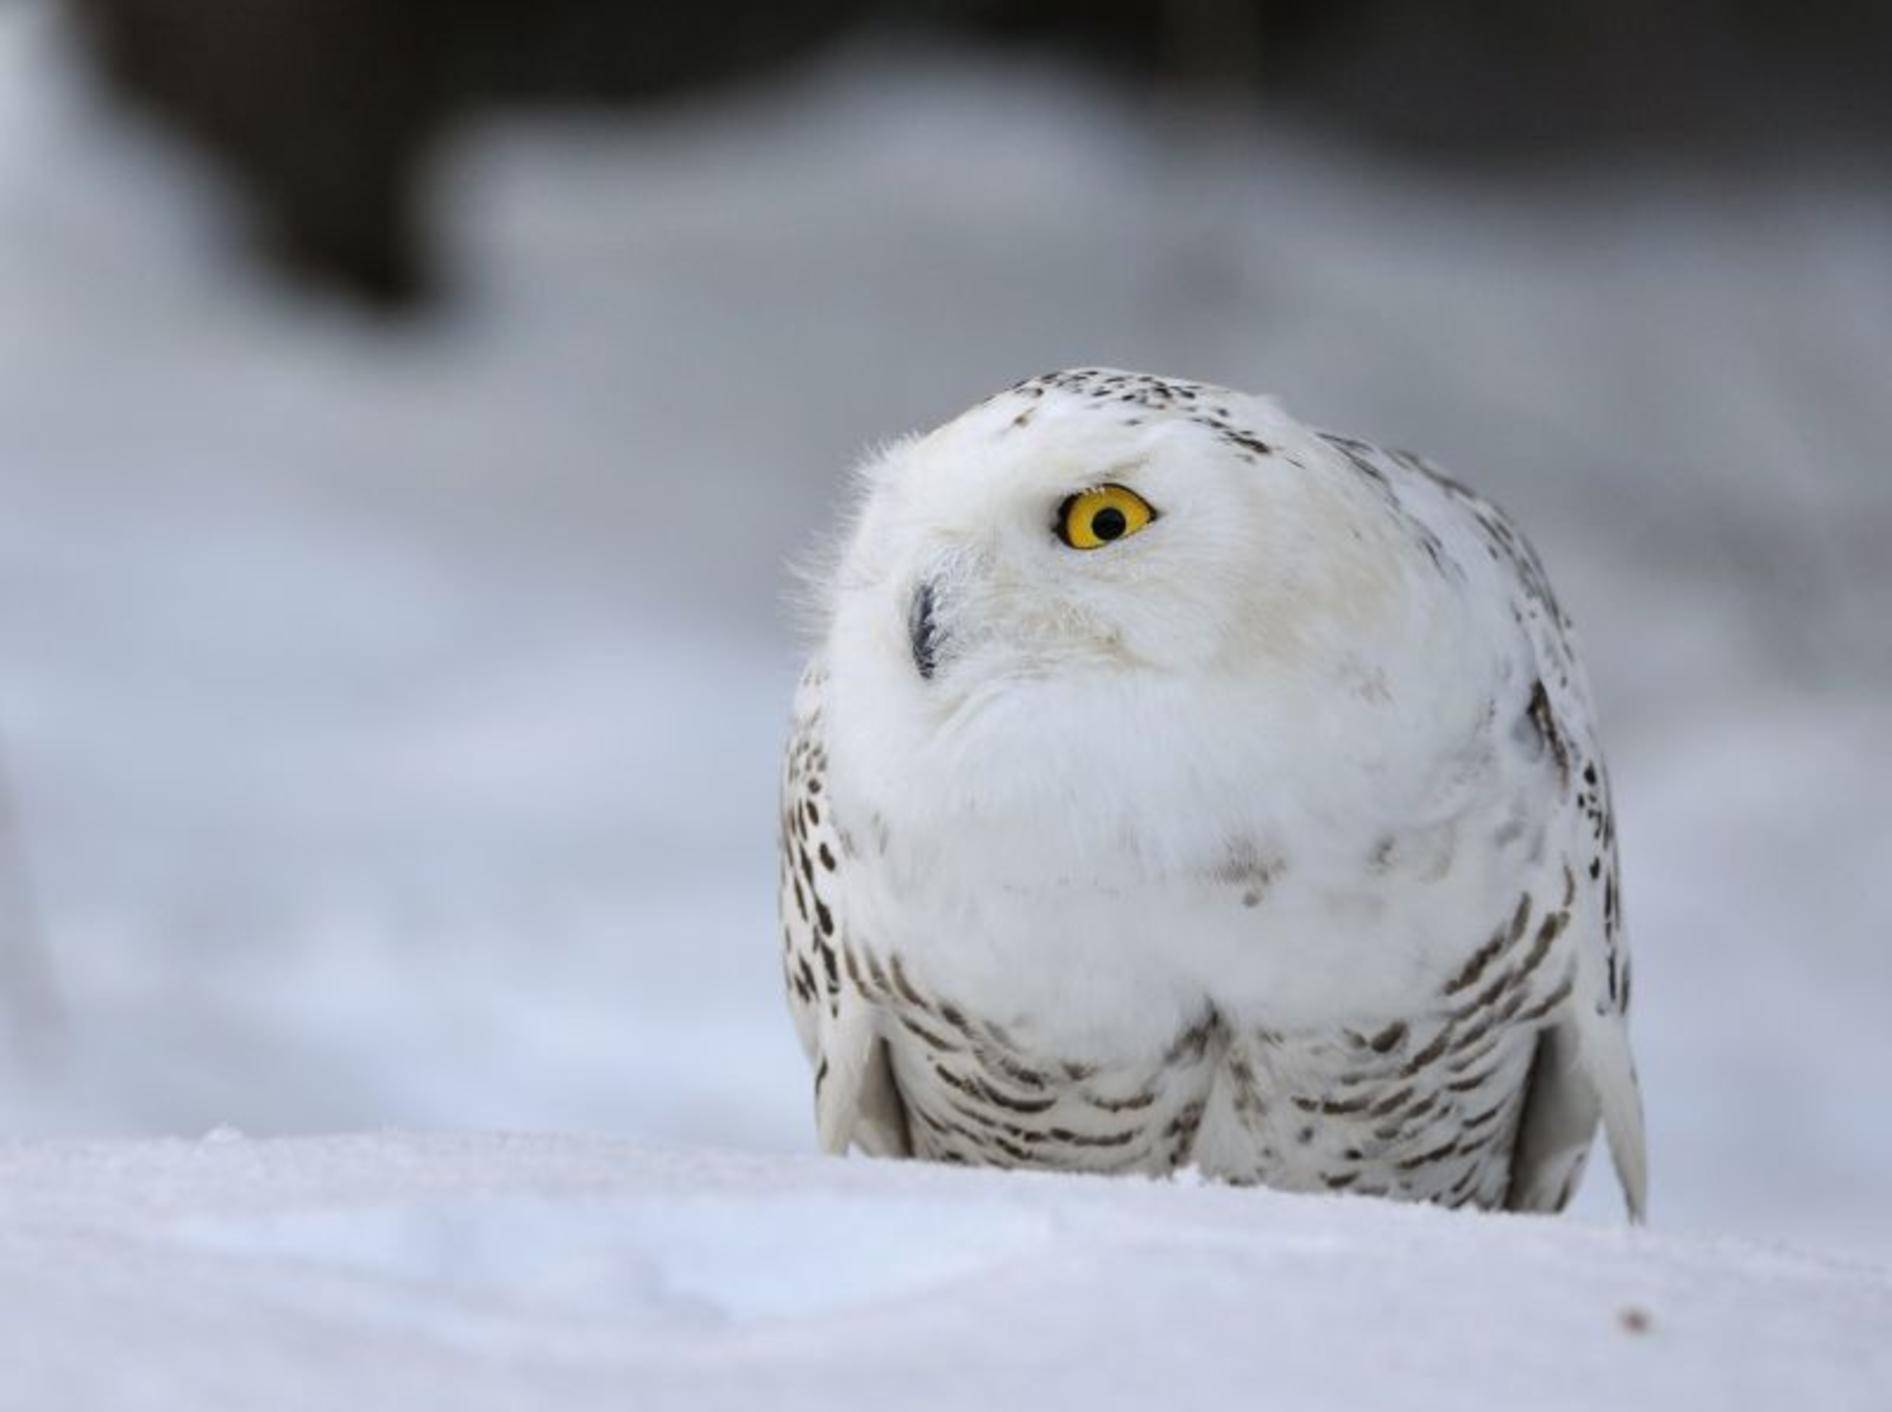 Nur die Augen leuchten: Schneeeule im tiefsten Winter — Bild: Shutterstock / Stanislav Duben